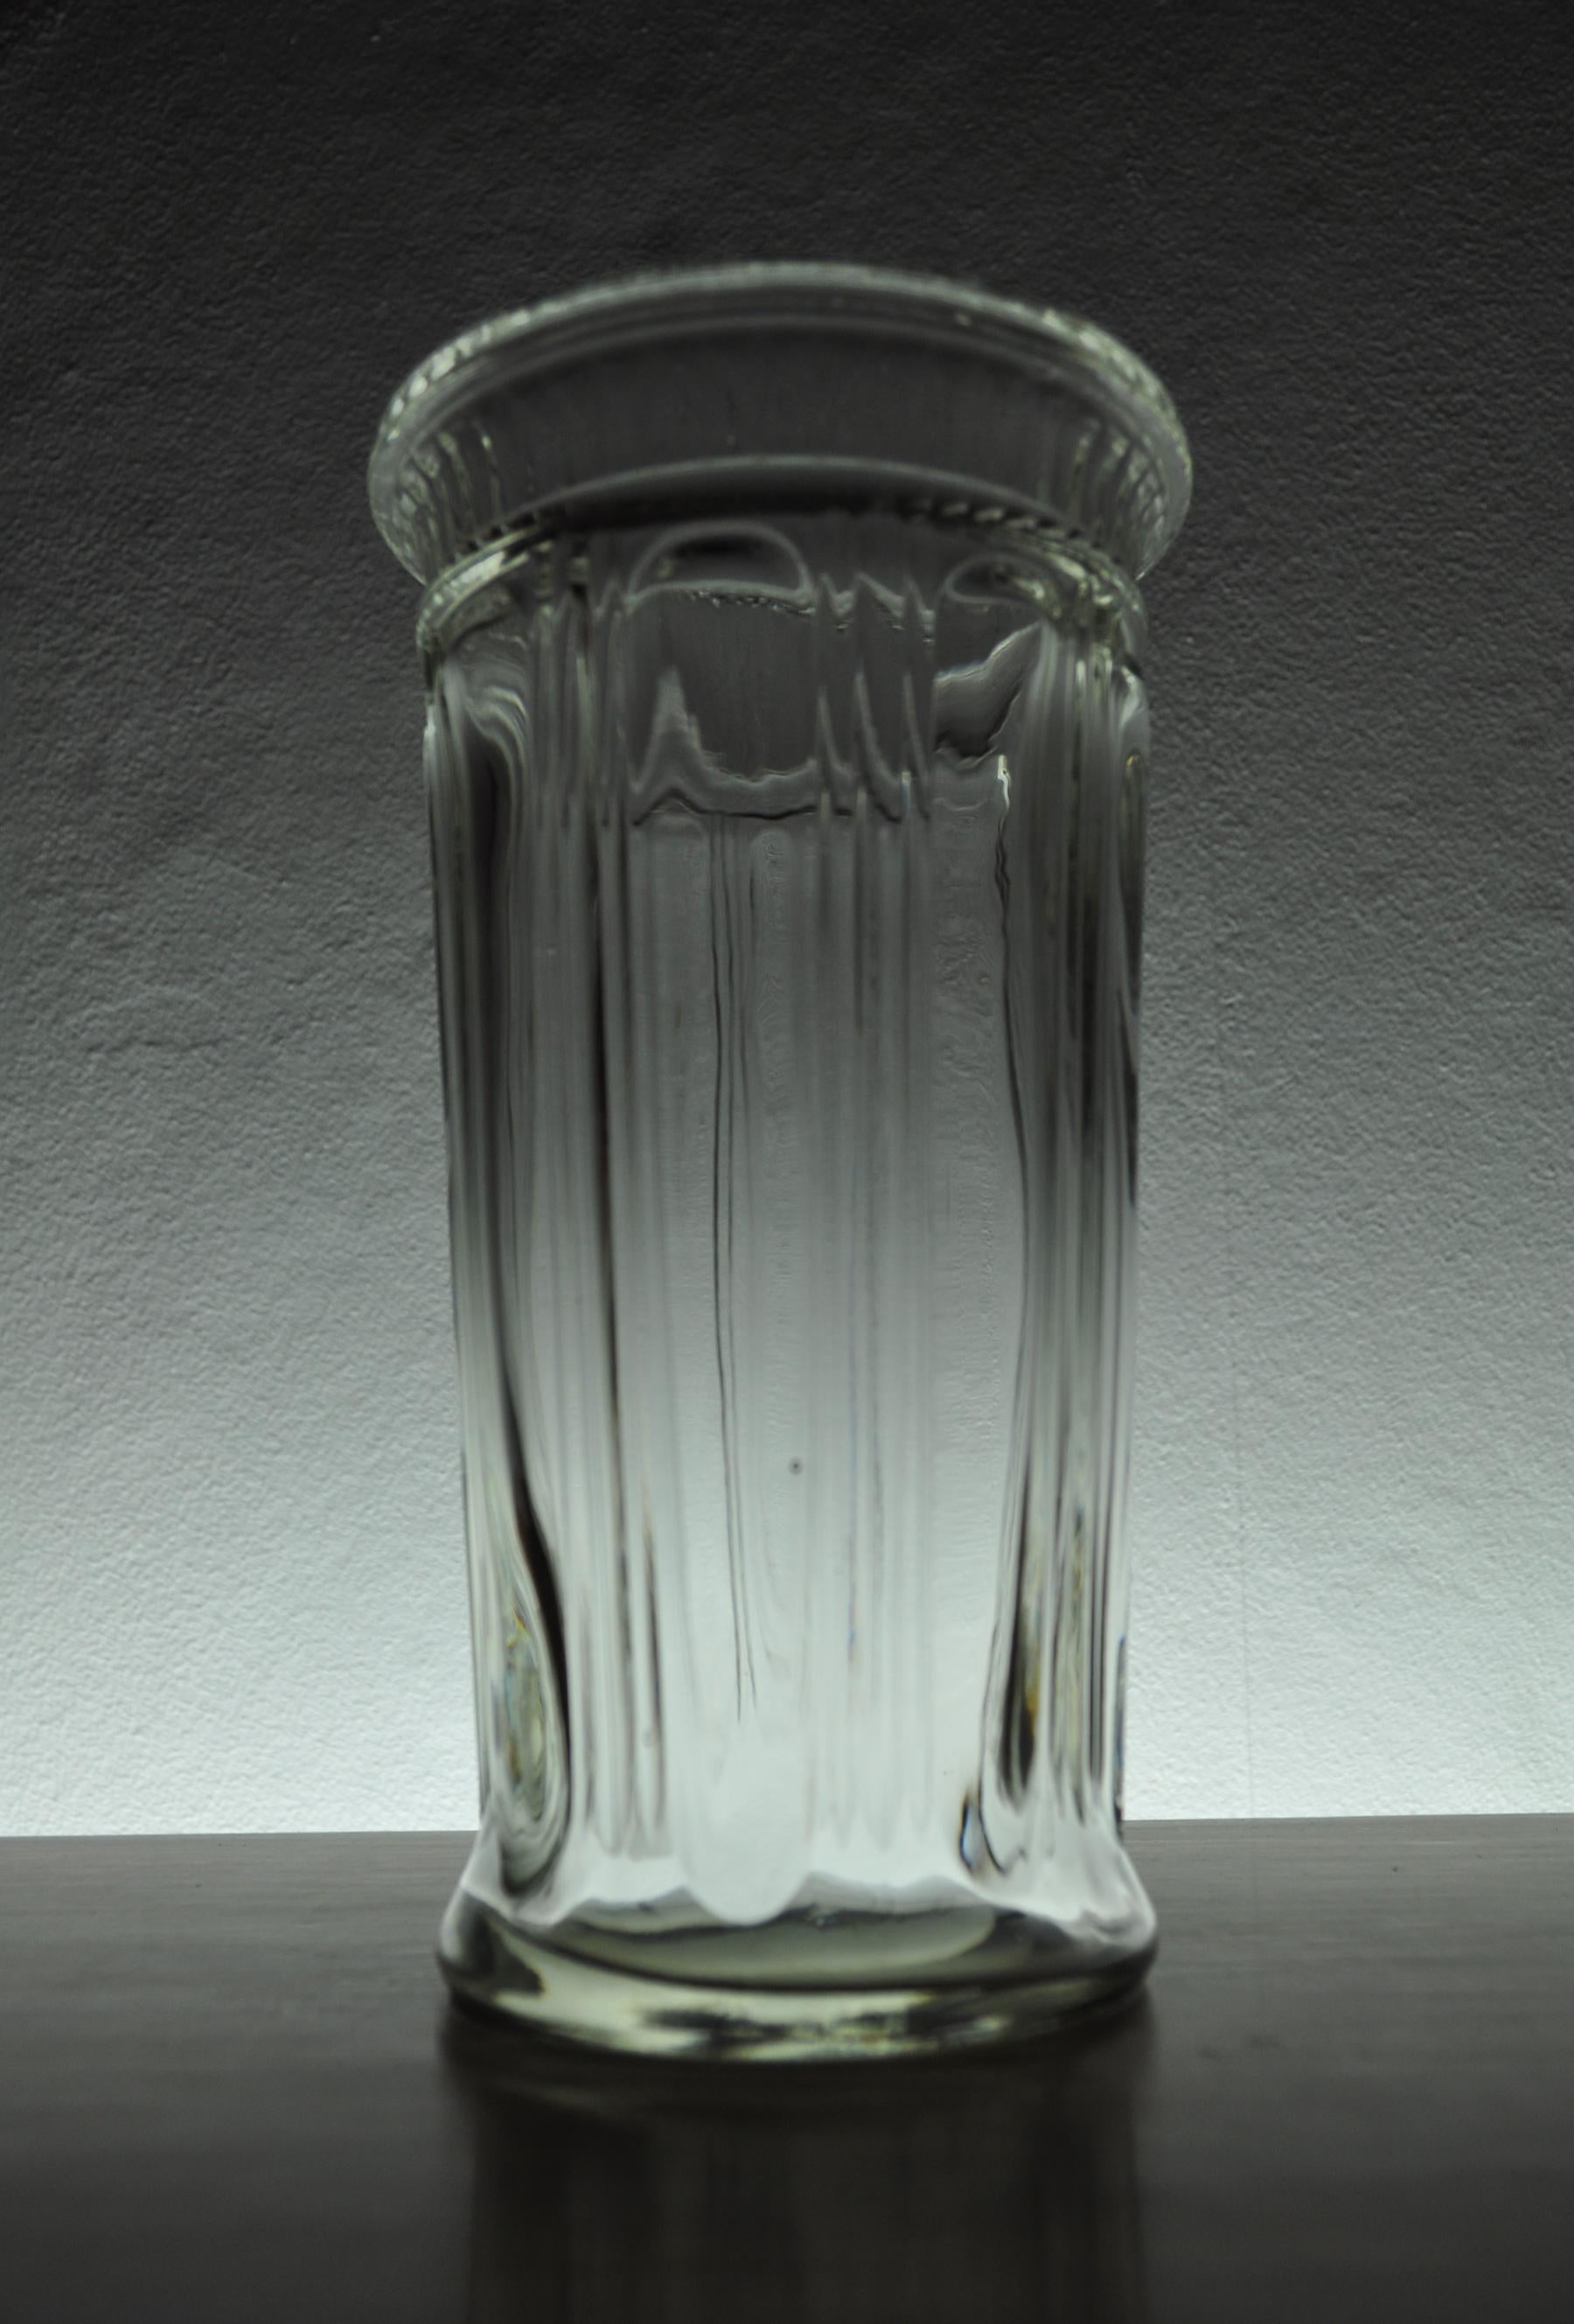 Pressed slightly conical vase with vertical striped pattern in a light gray color.
Holmegaards Glasværk, 1958.